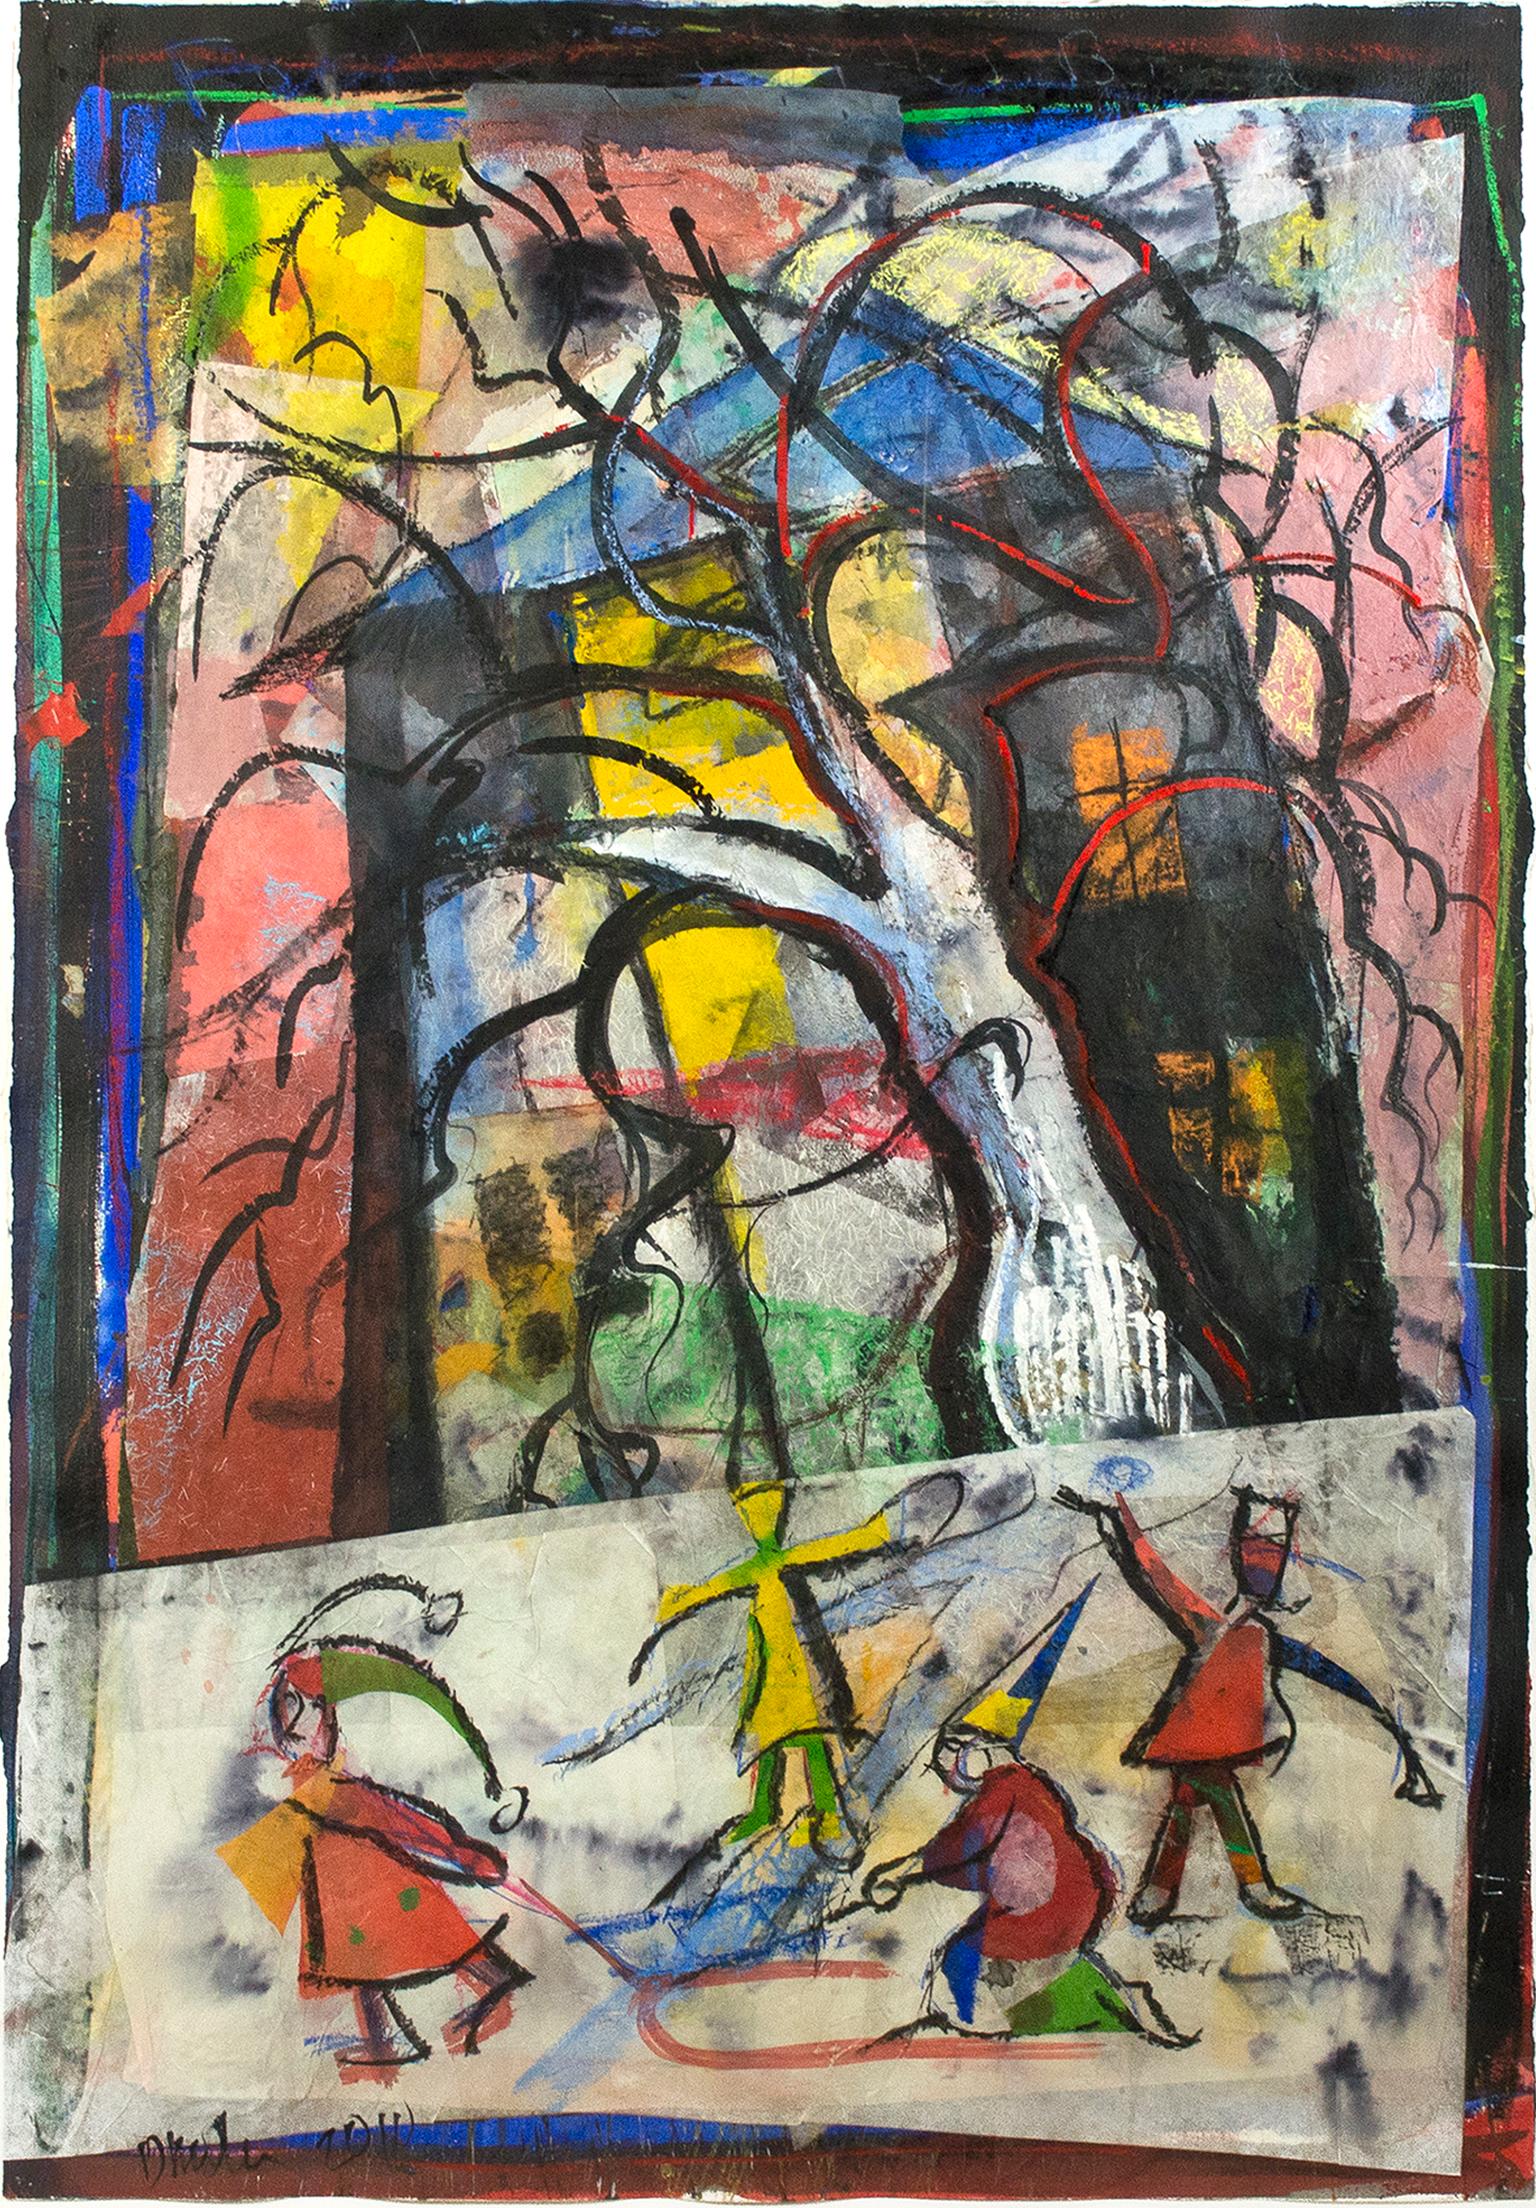 „Sledding by the Big Tree“, farbenfrohes Gemälde in Mischtechnik von Dan Muller